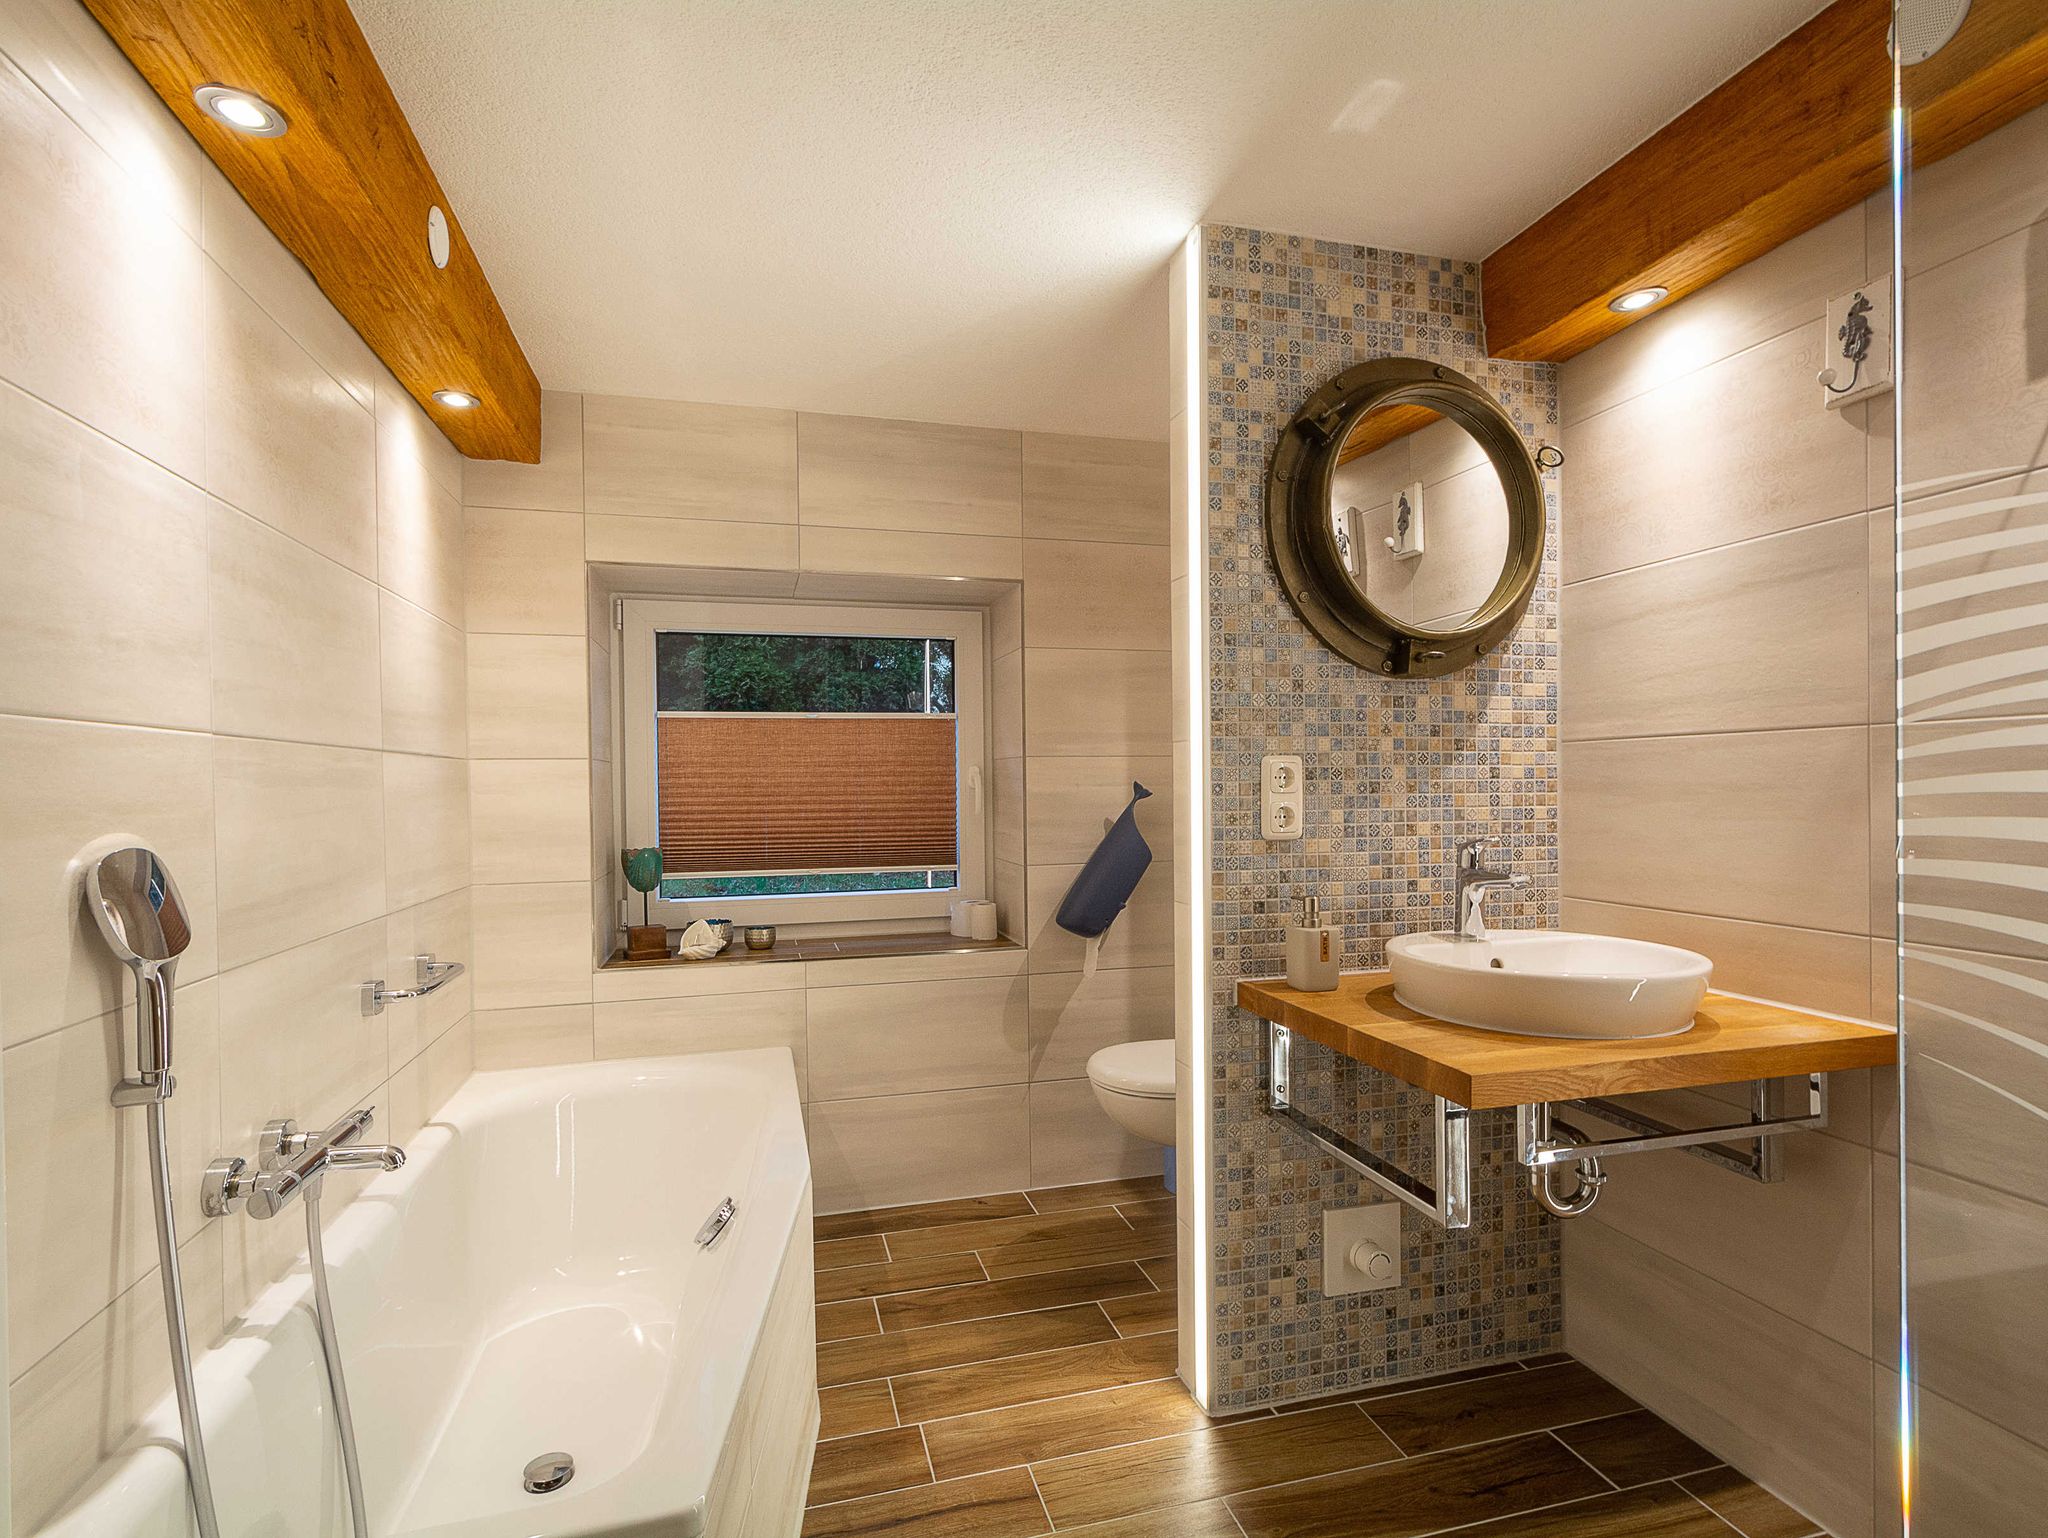 Das neue moderne Bad mit Badewanne und Regenwalddusche